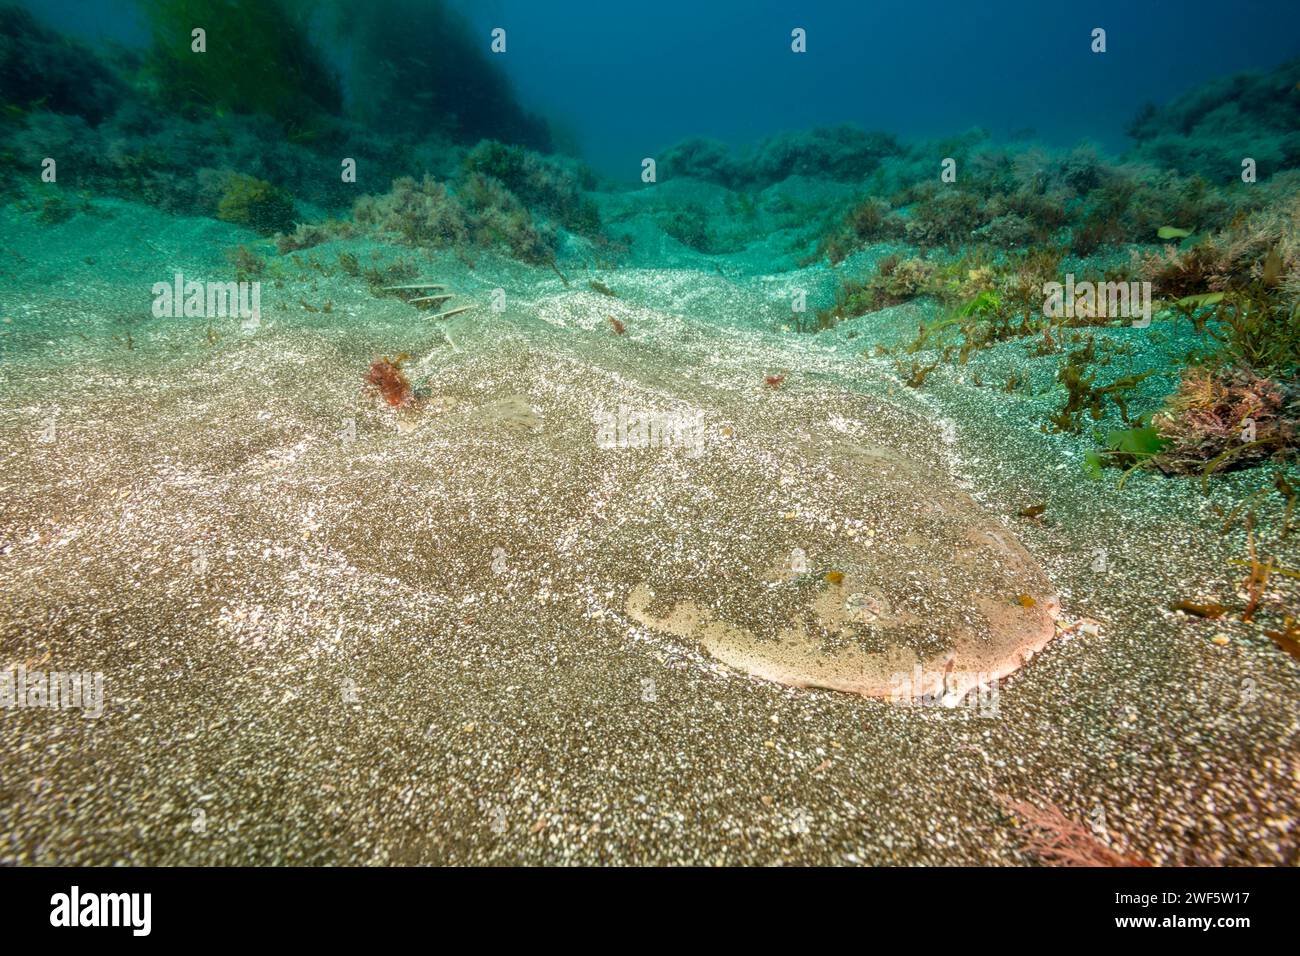 Questo squalo angelo del Pacifico, Squatina californica, si è sepolto su un fondale sabbioso al largo dell'isola di Santa Barbara, California, Stati Uniti. Per completare il camoufl Foto Stock